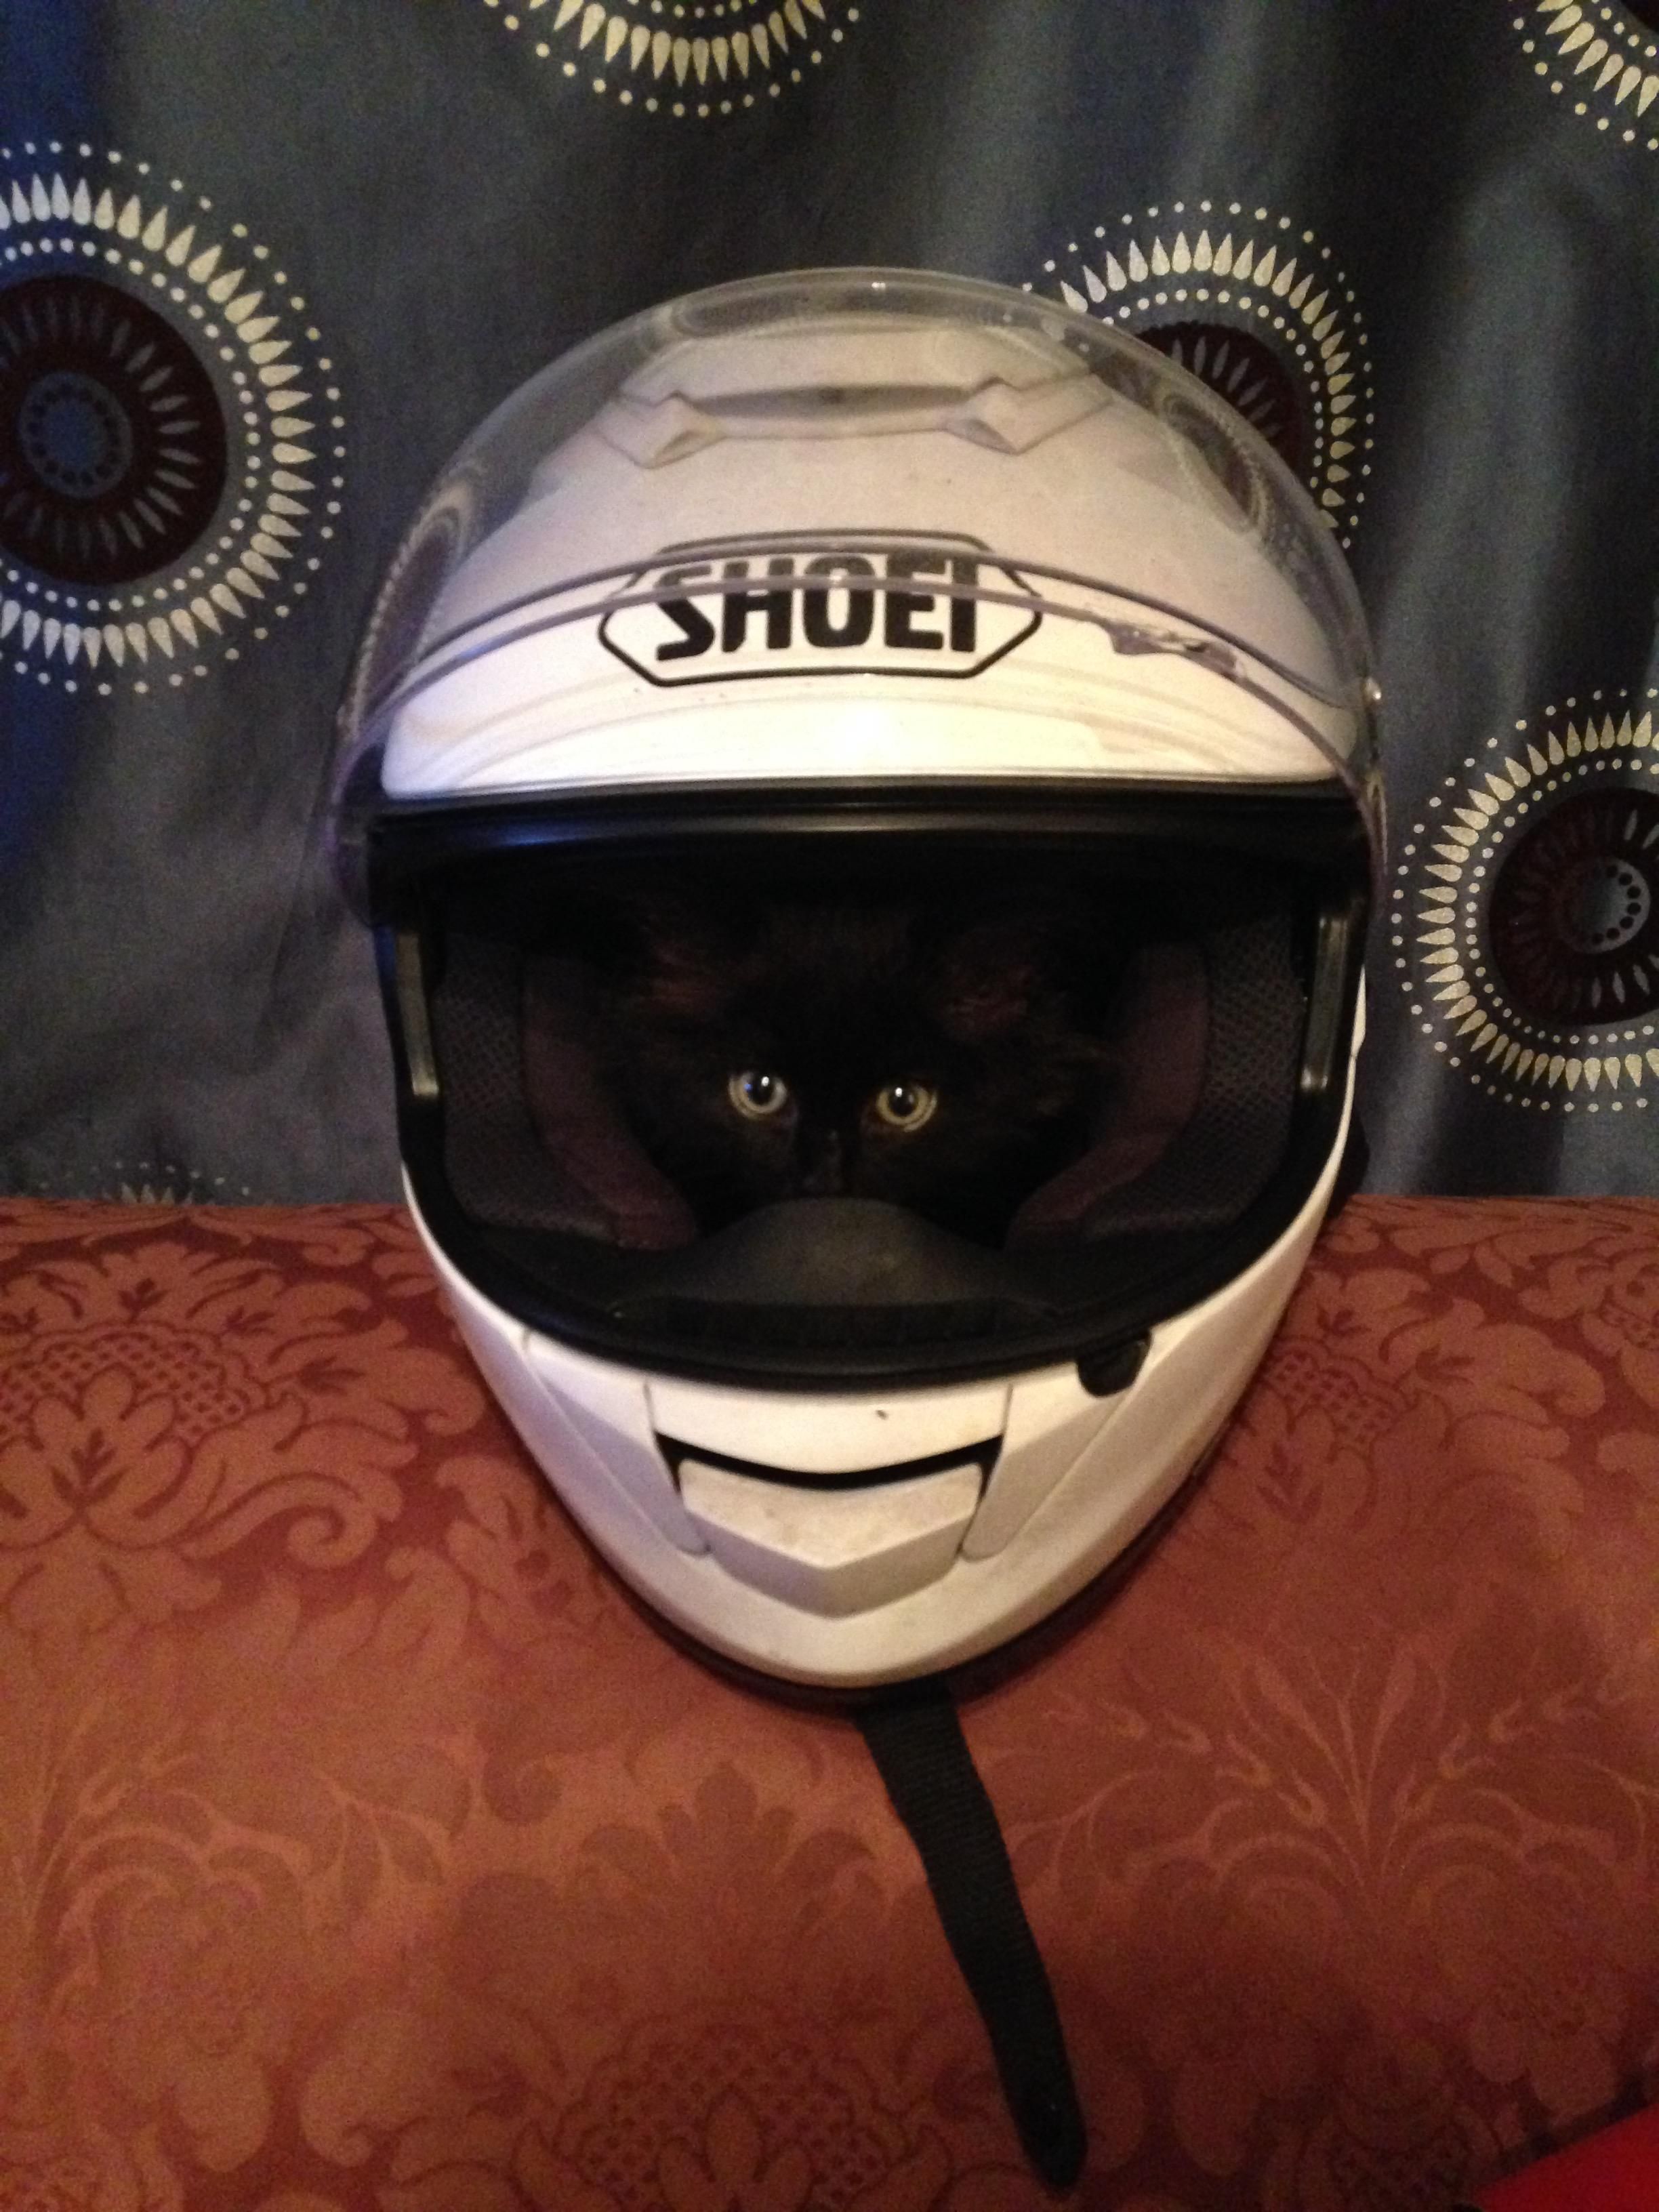 my kitten loves motorbike helmet